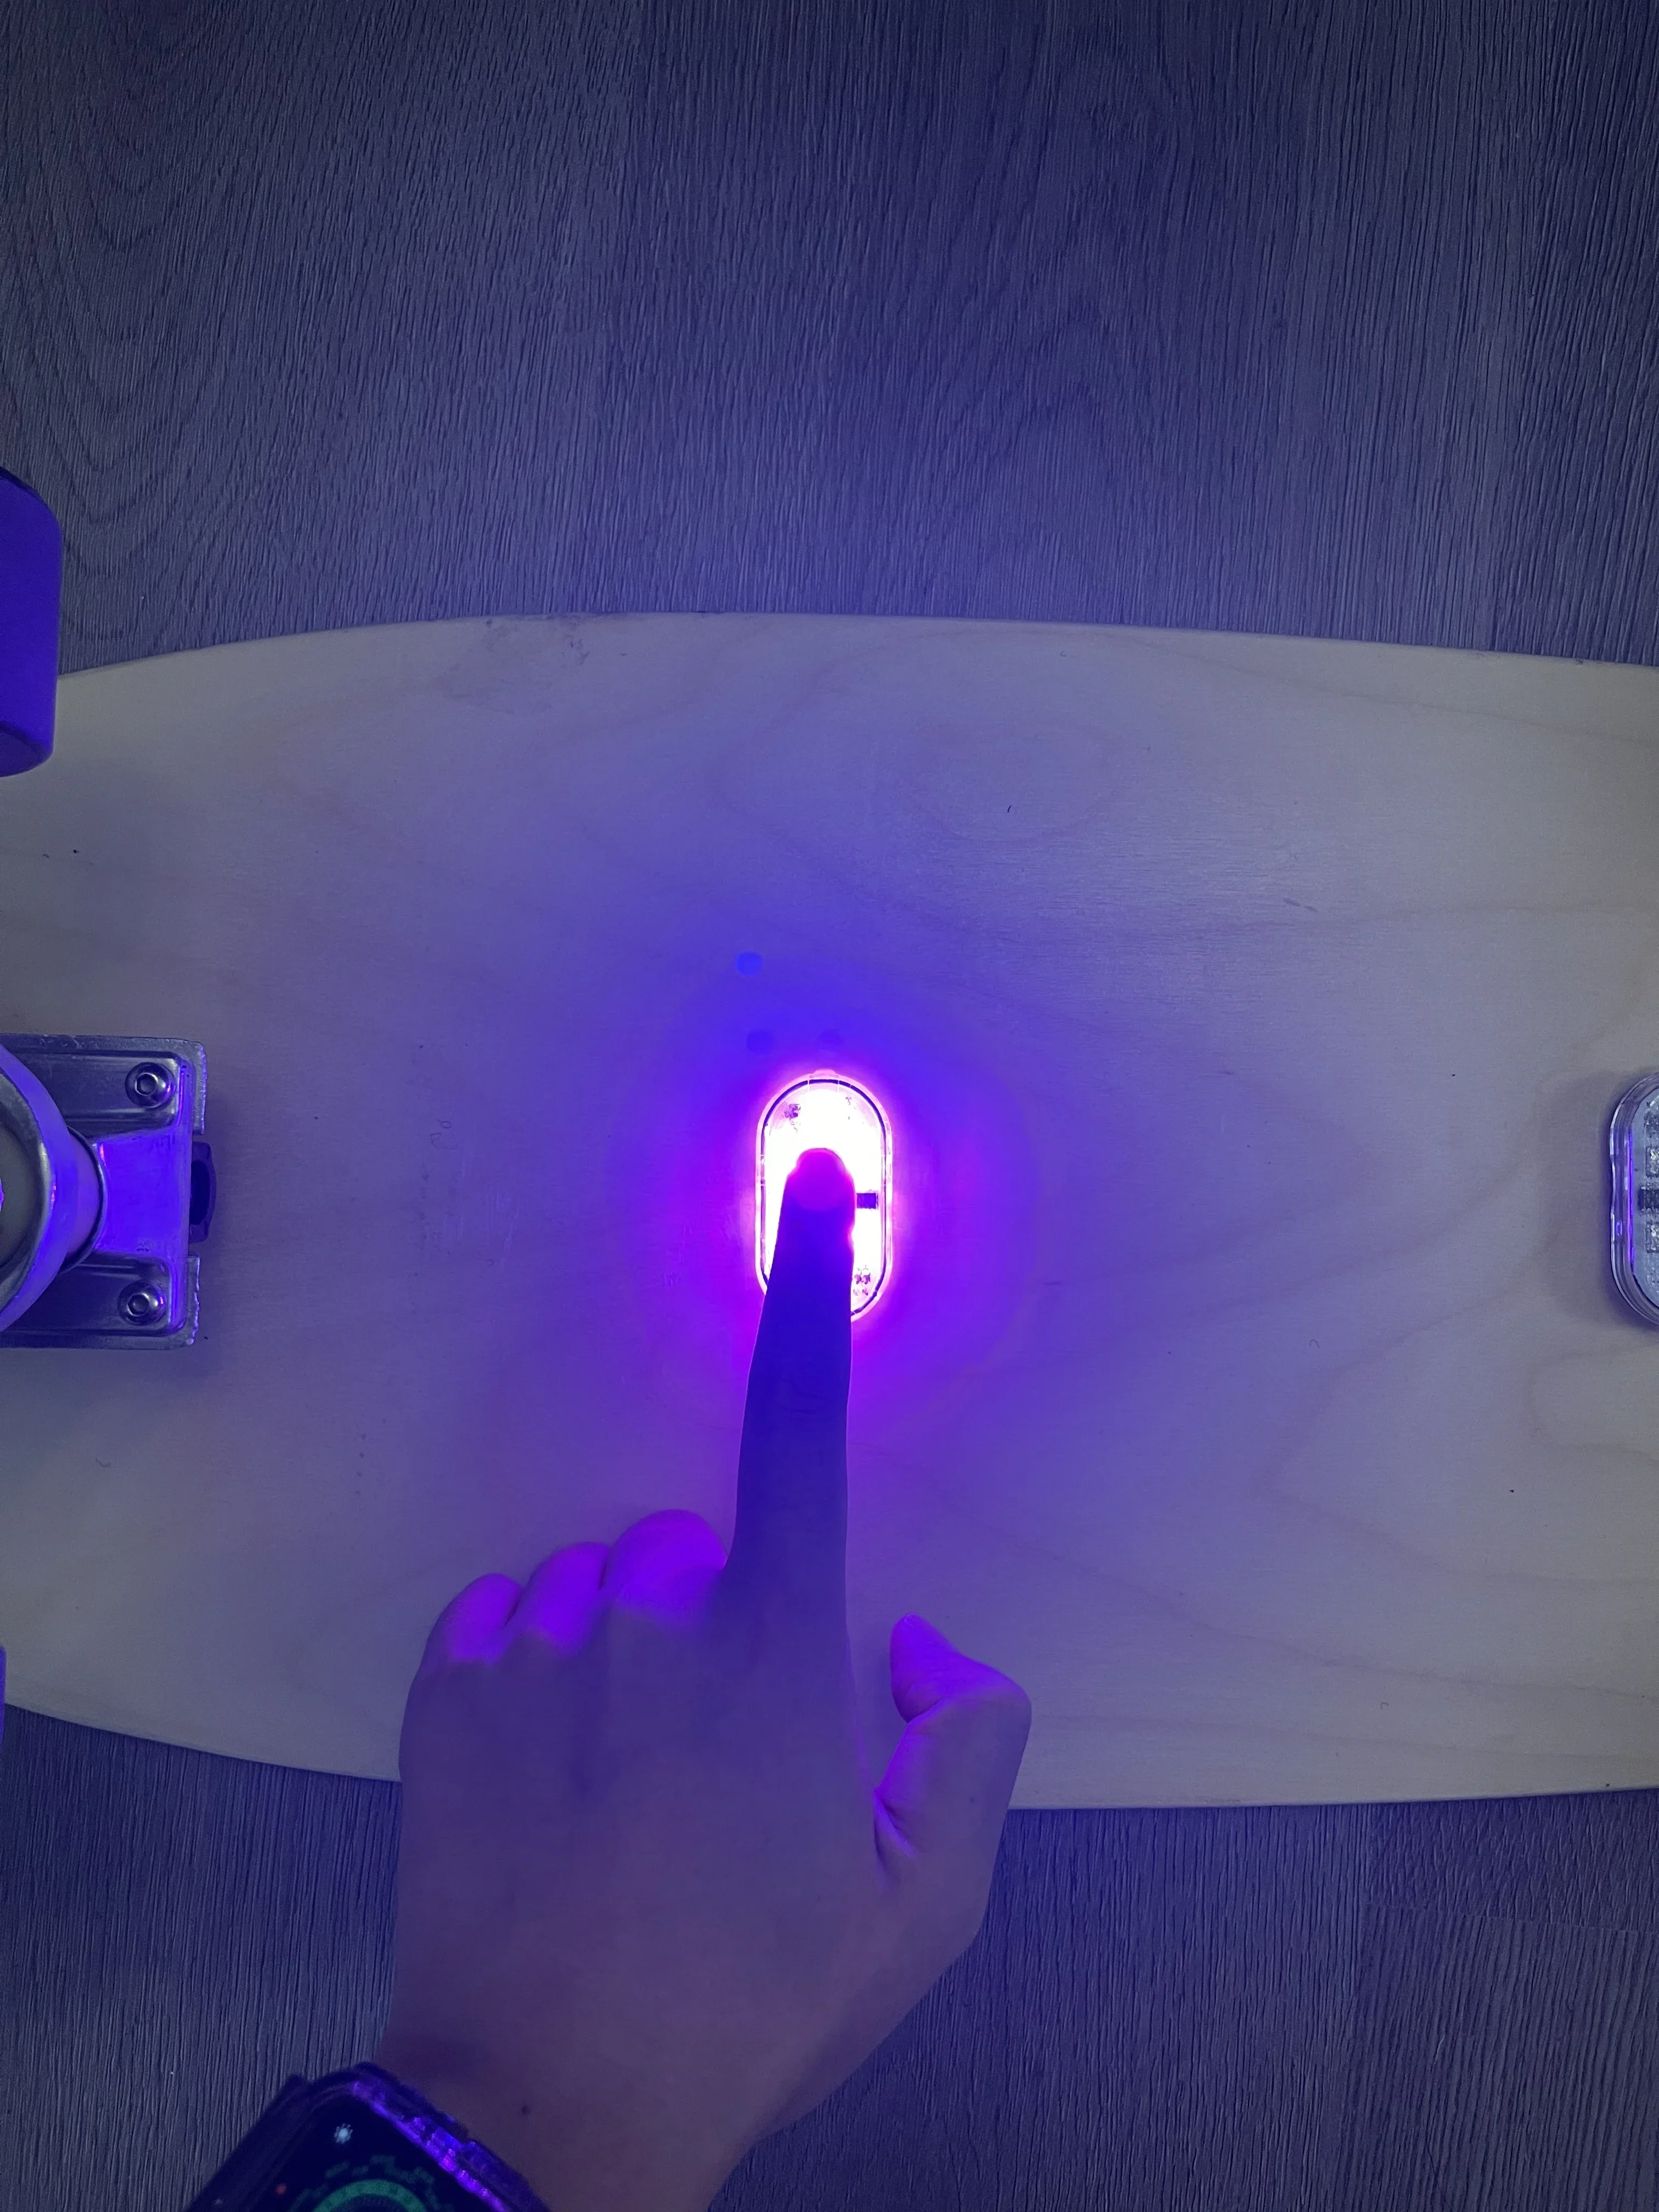 Skateboard Flash Touch LED LONGBORD NACHT ABABLEINE USB BEHANDLICHE ELEKTRISCHE SCOOTER BREISE Blazer Lampe Unterglühen Geschenk